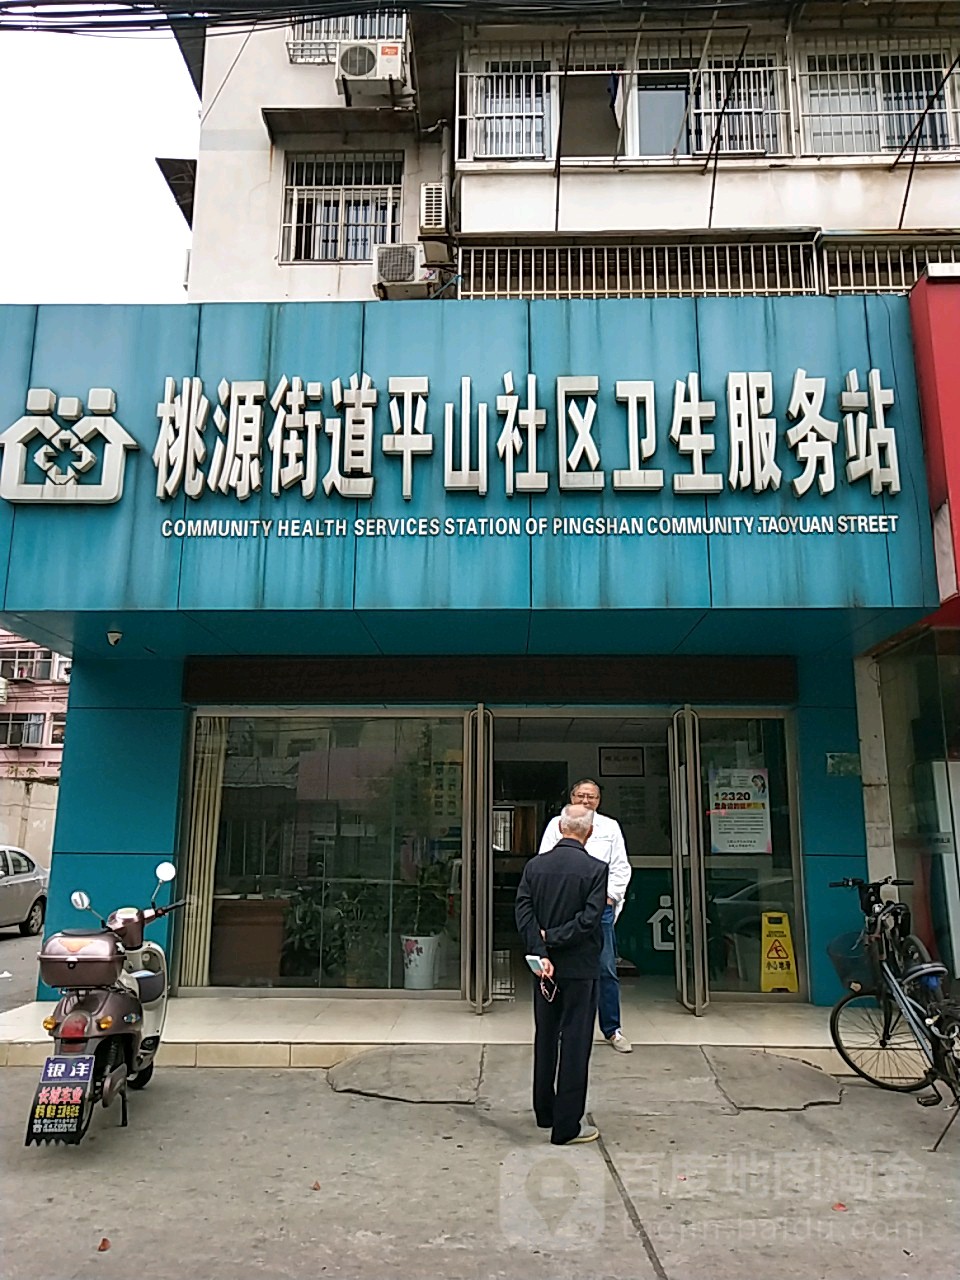 桃源街道平山社区卫生服务站